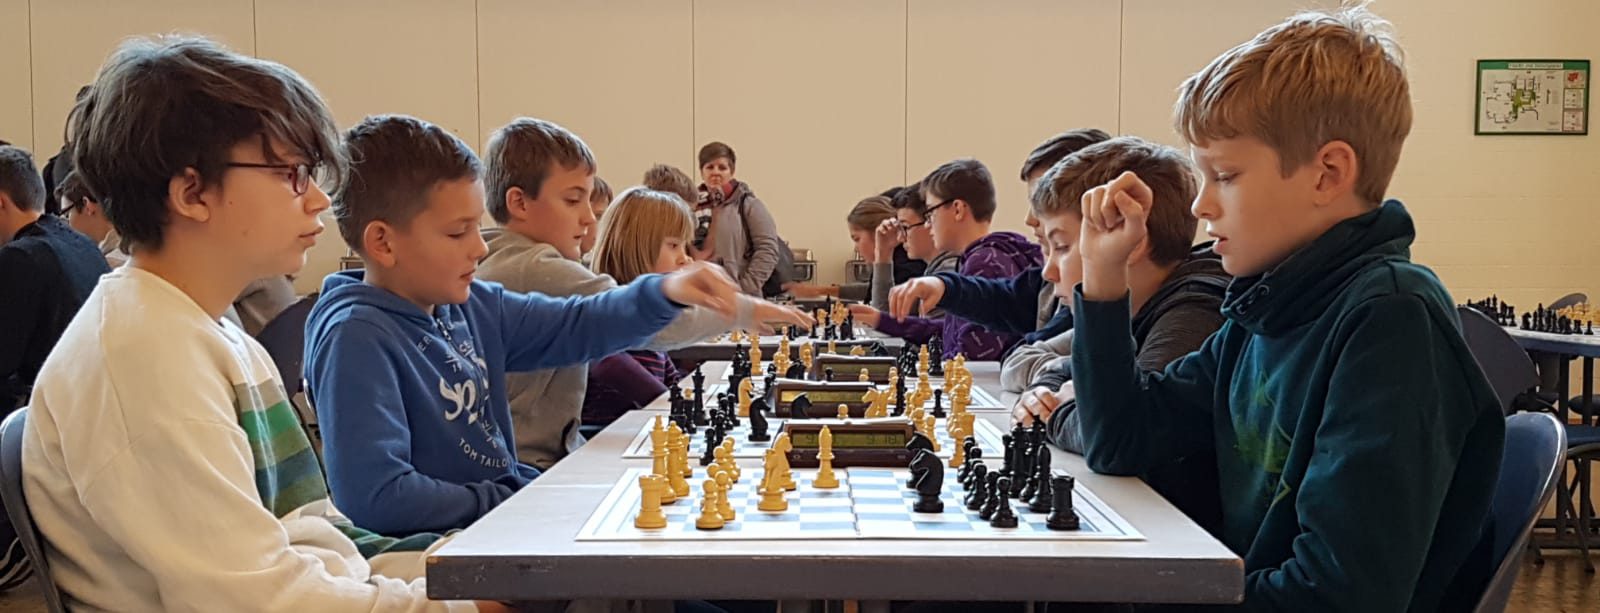 Siege bei Kreismeisterschaften im Schach